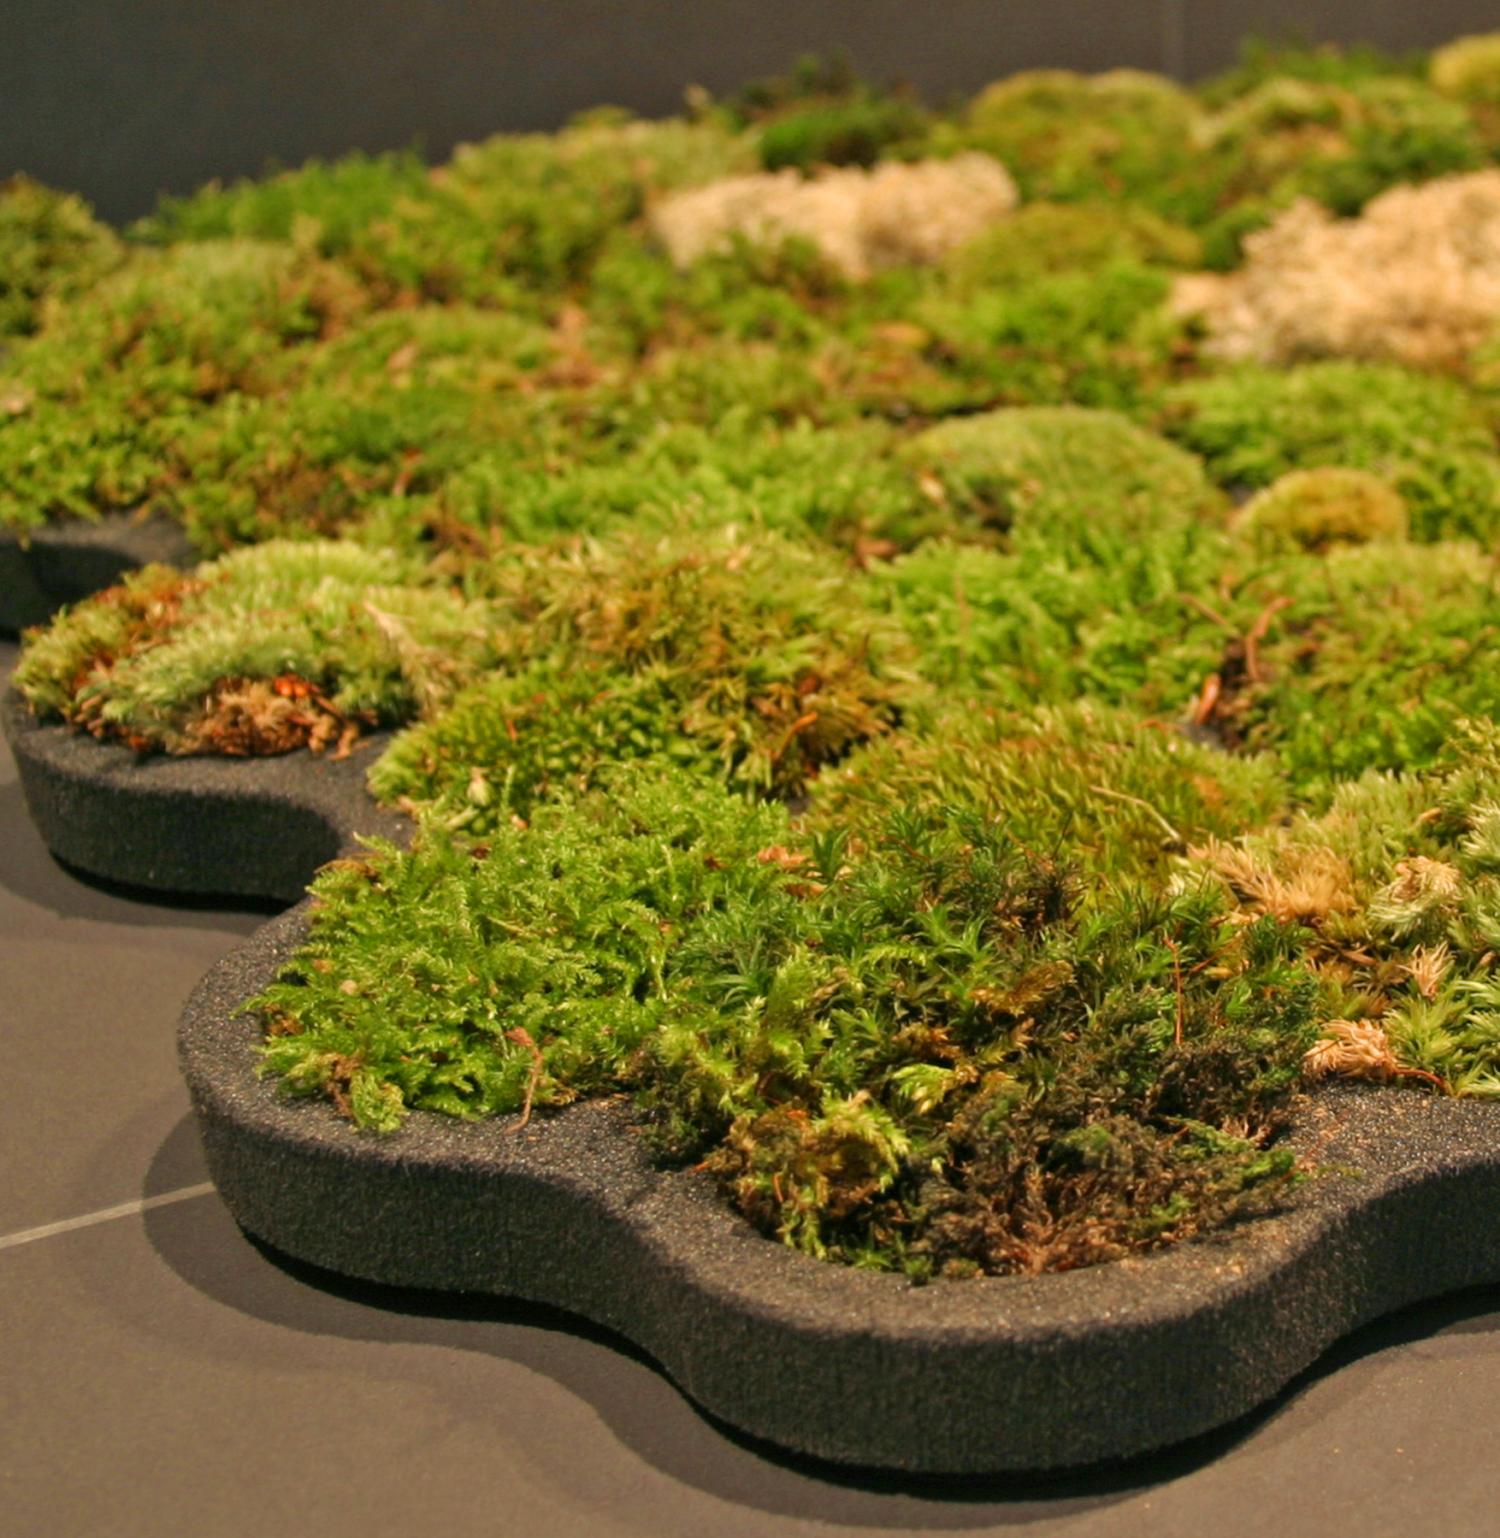 Moss Bathroom Mat - Real moss shower mat